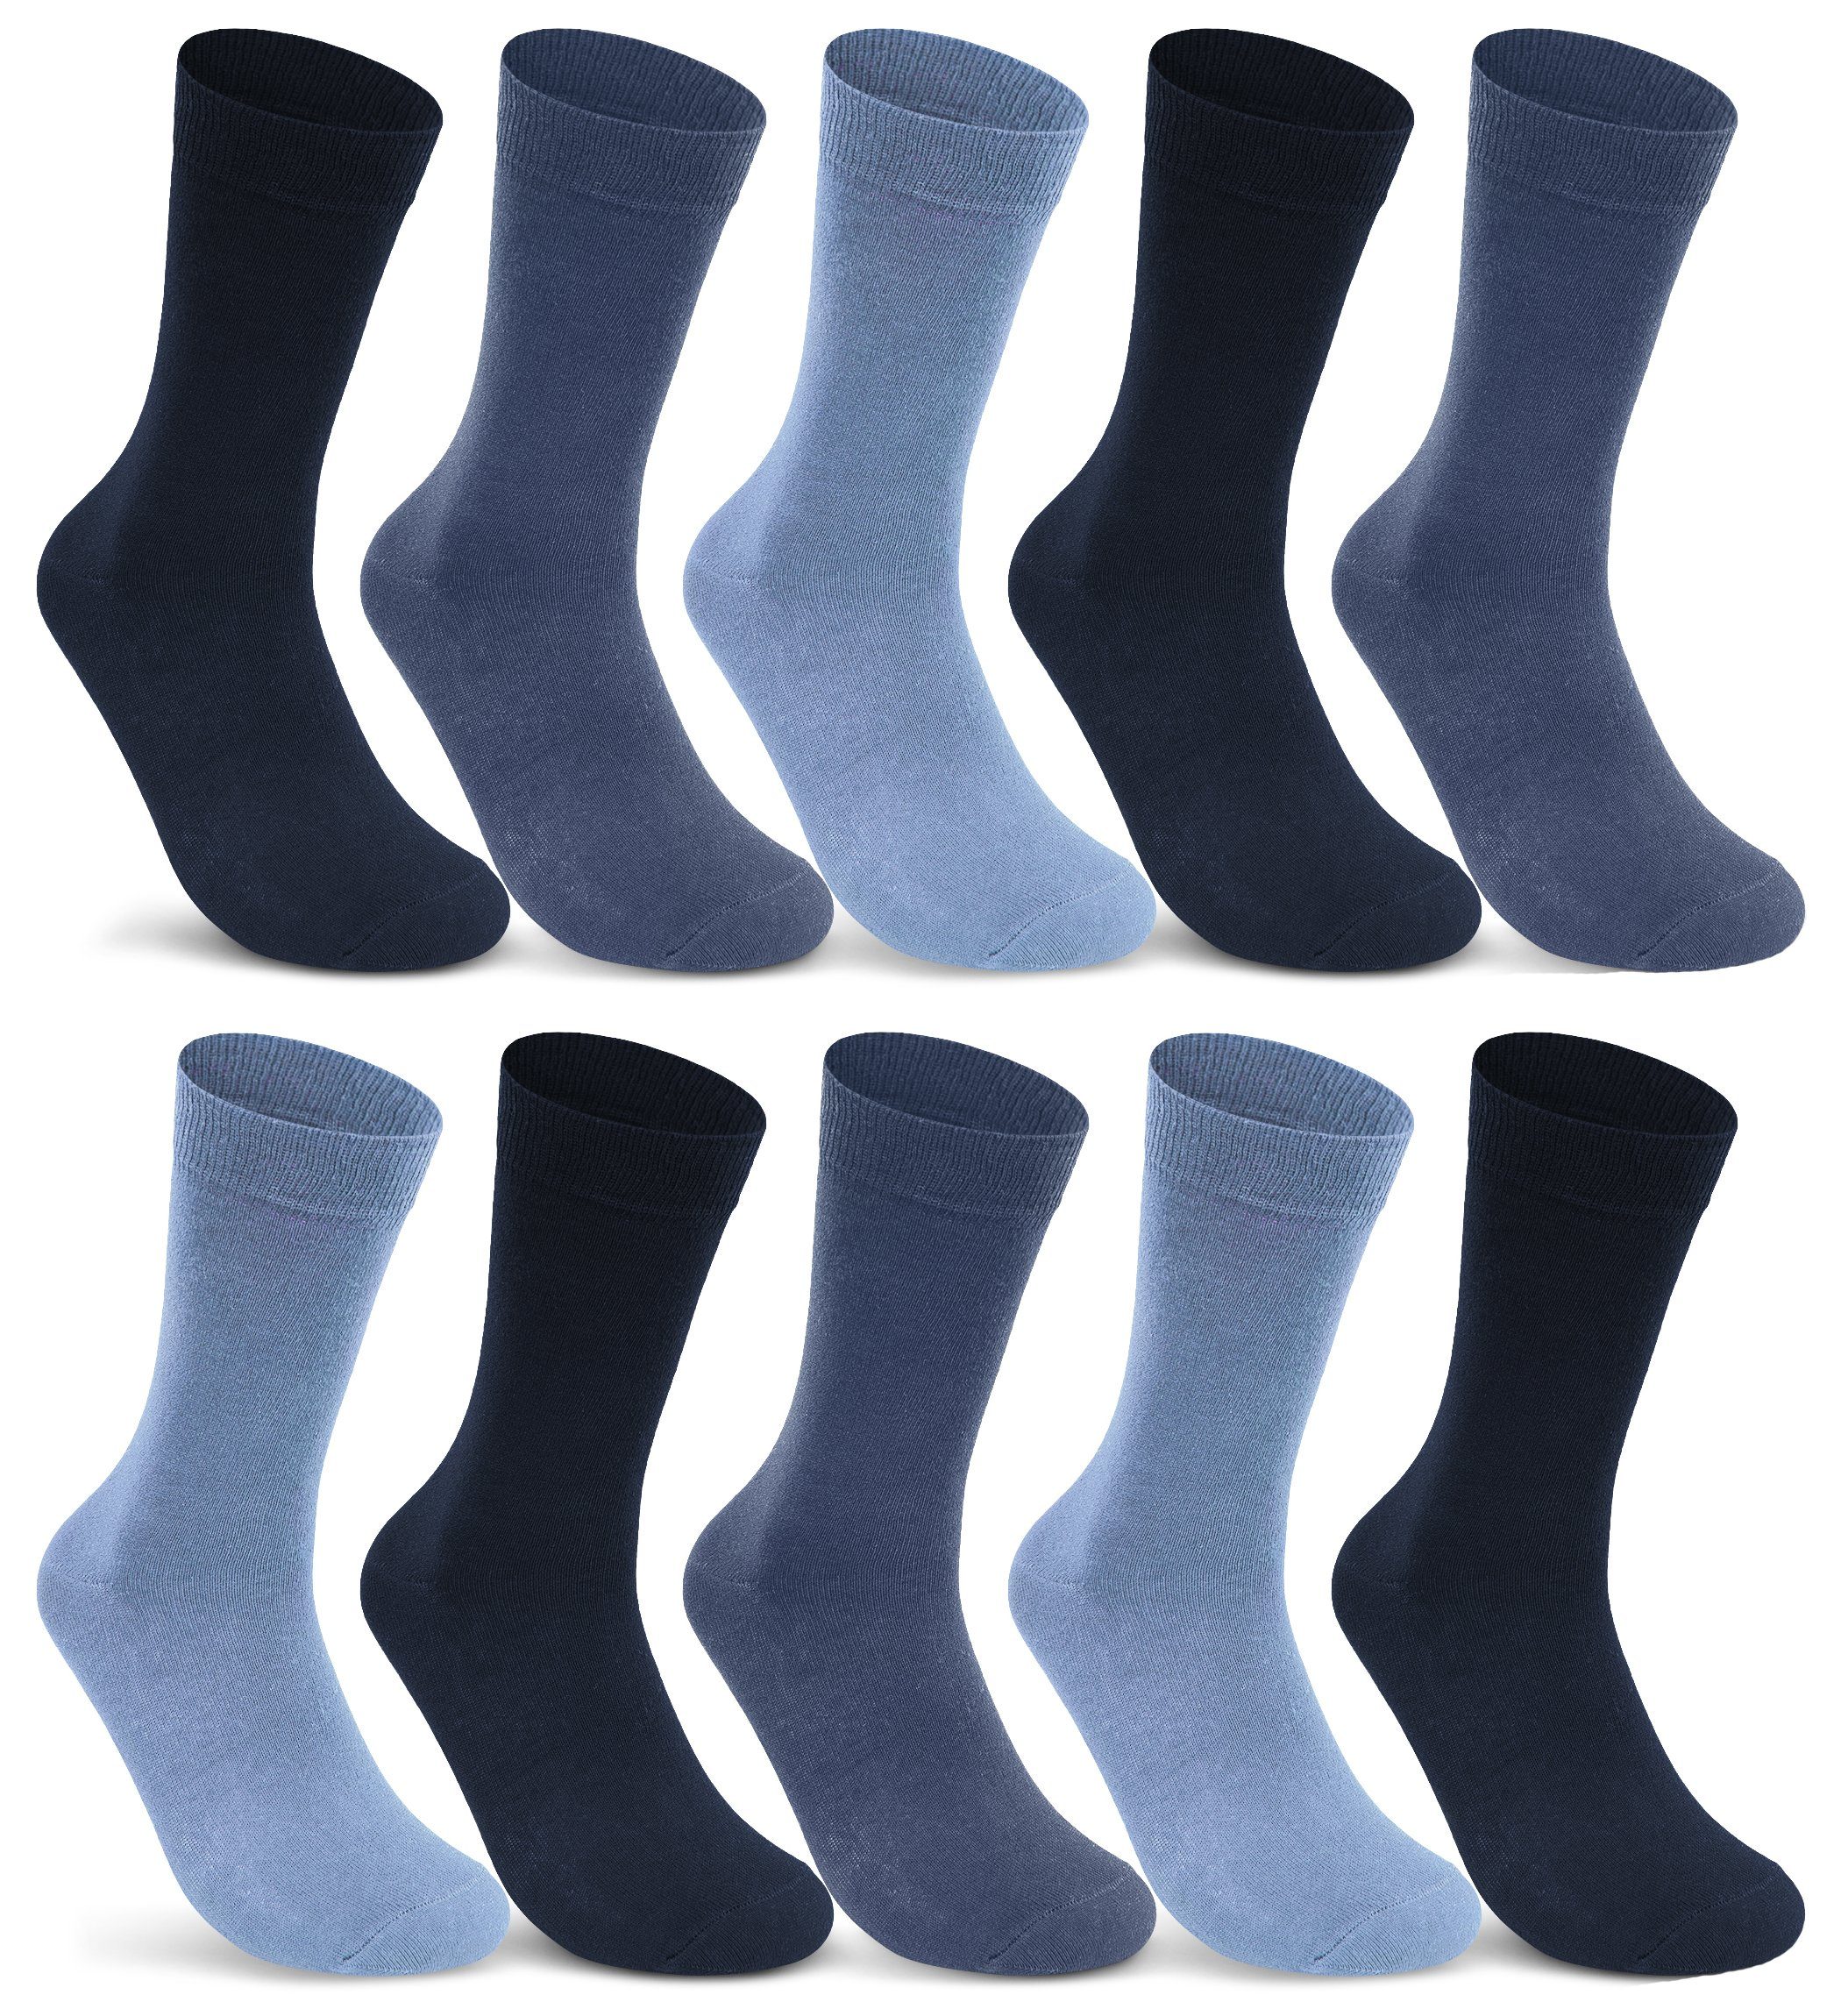 20 Paar Herren Business Socken Premium schwarz 80% Baumwolle 5% Elasthan Top 